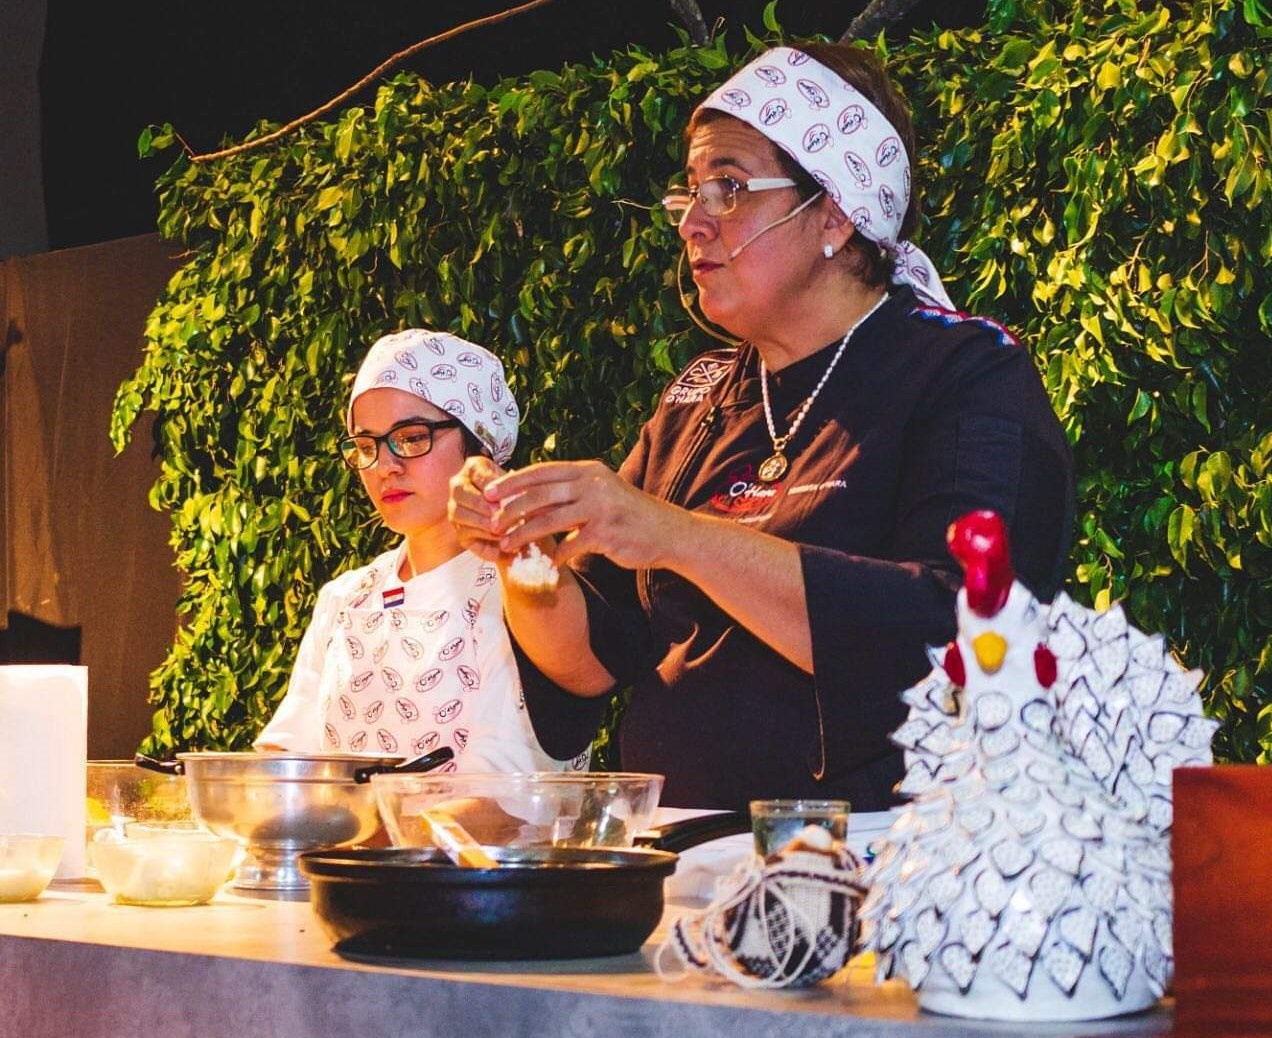 Cultura y gastronomía paraguayas en feria de Formosa, Argentina